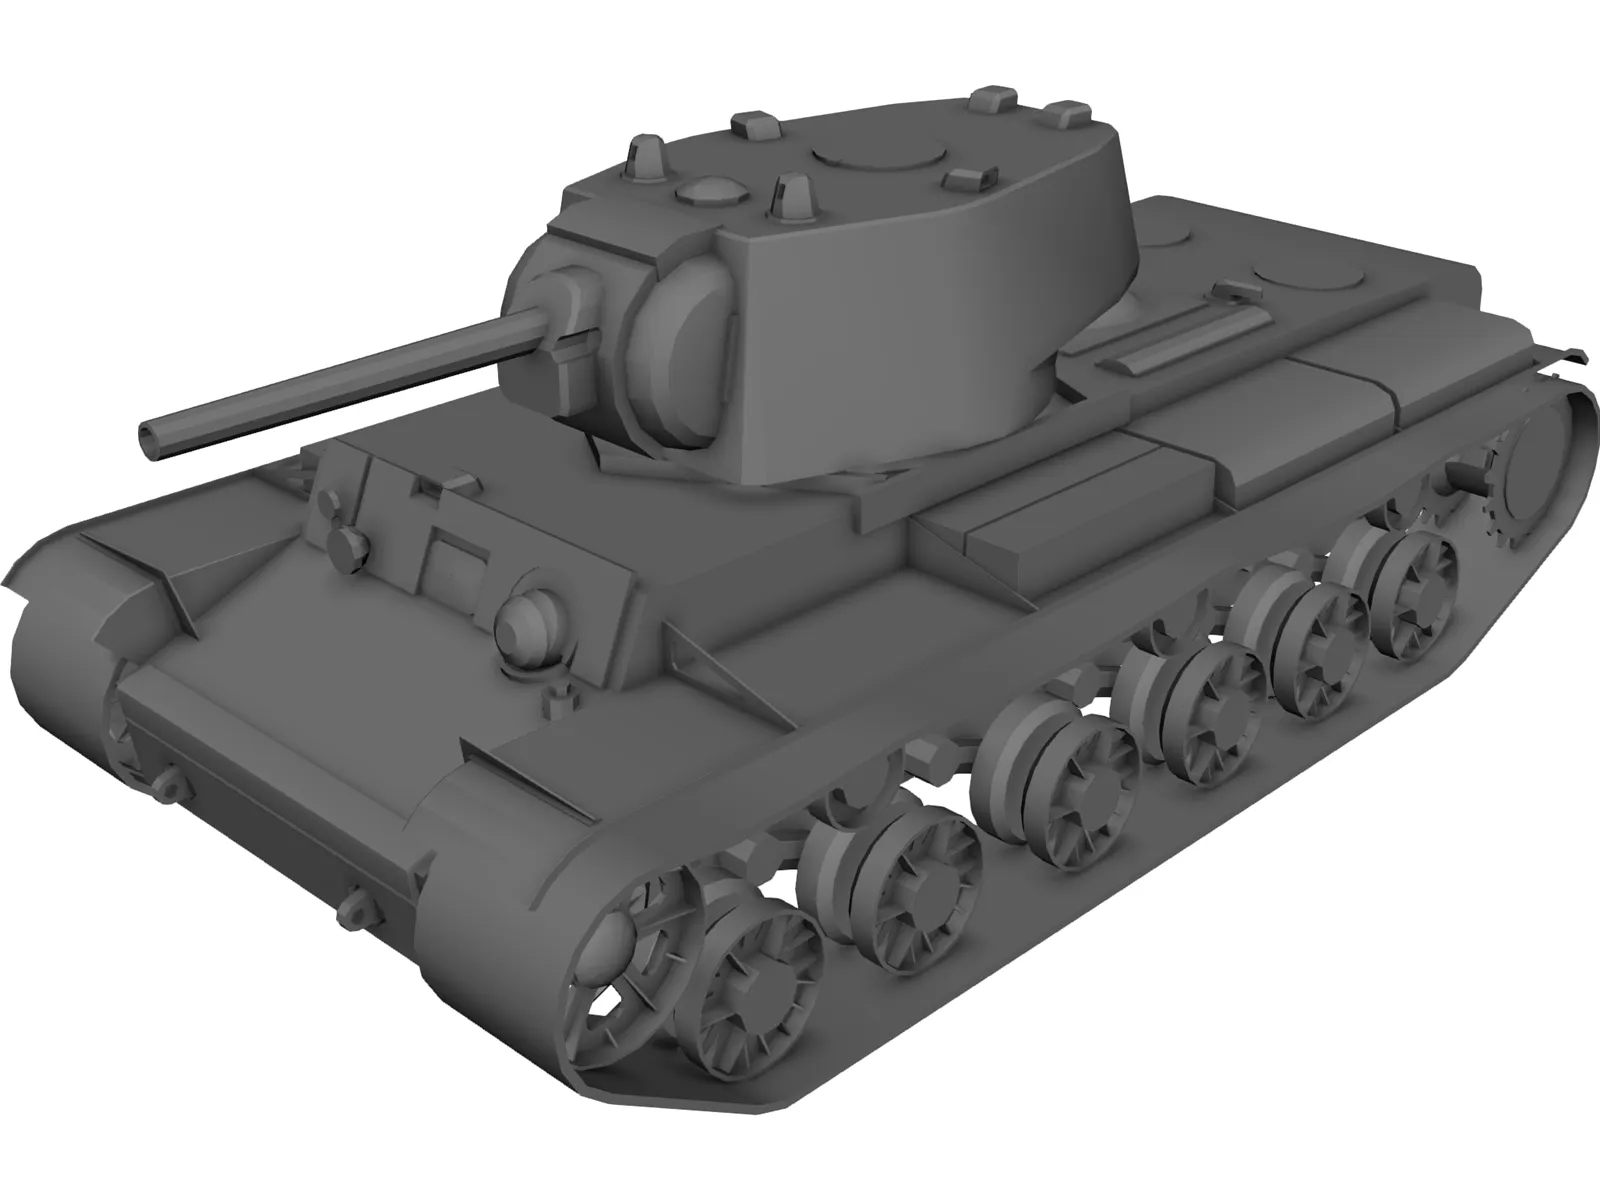 Tank KV-1 3D Model